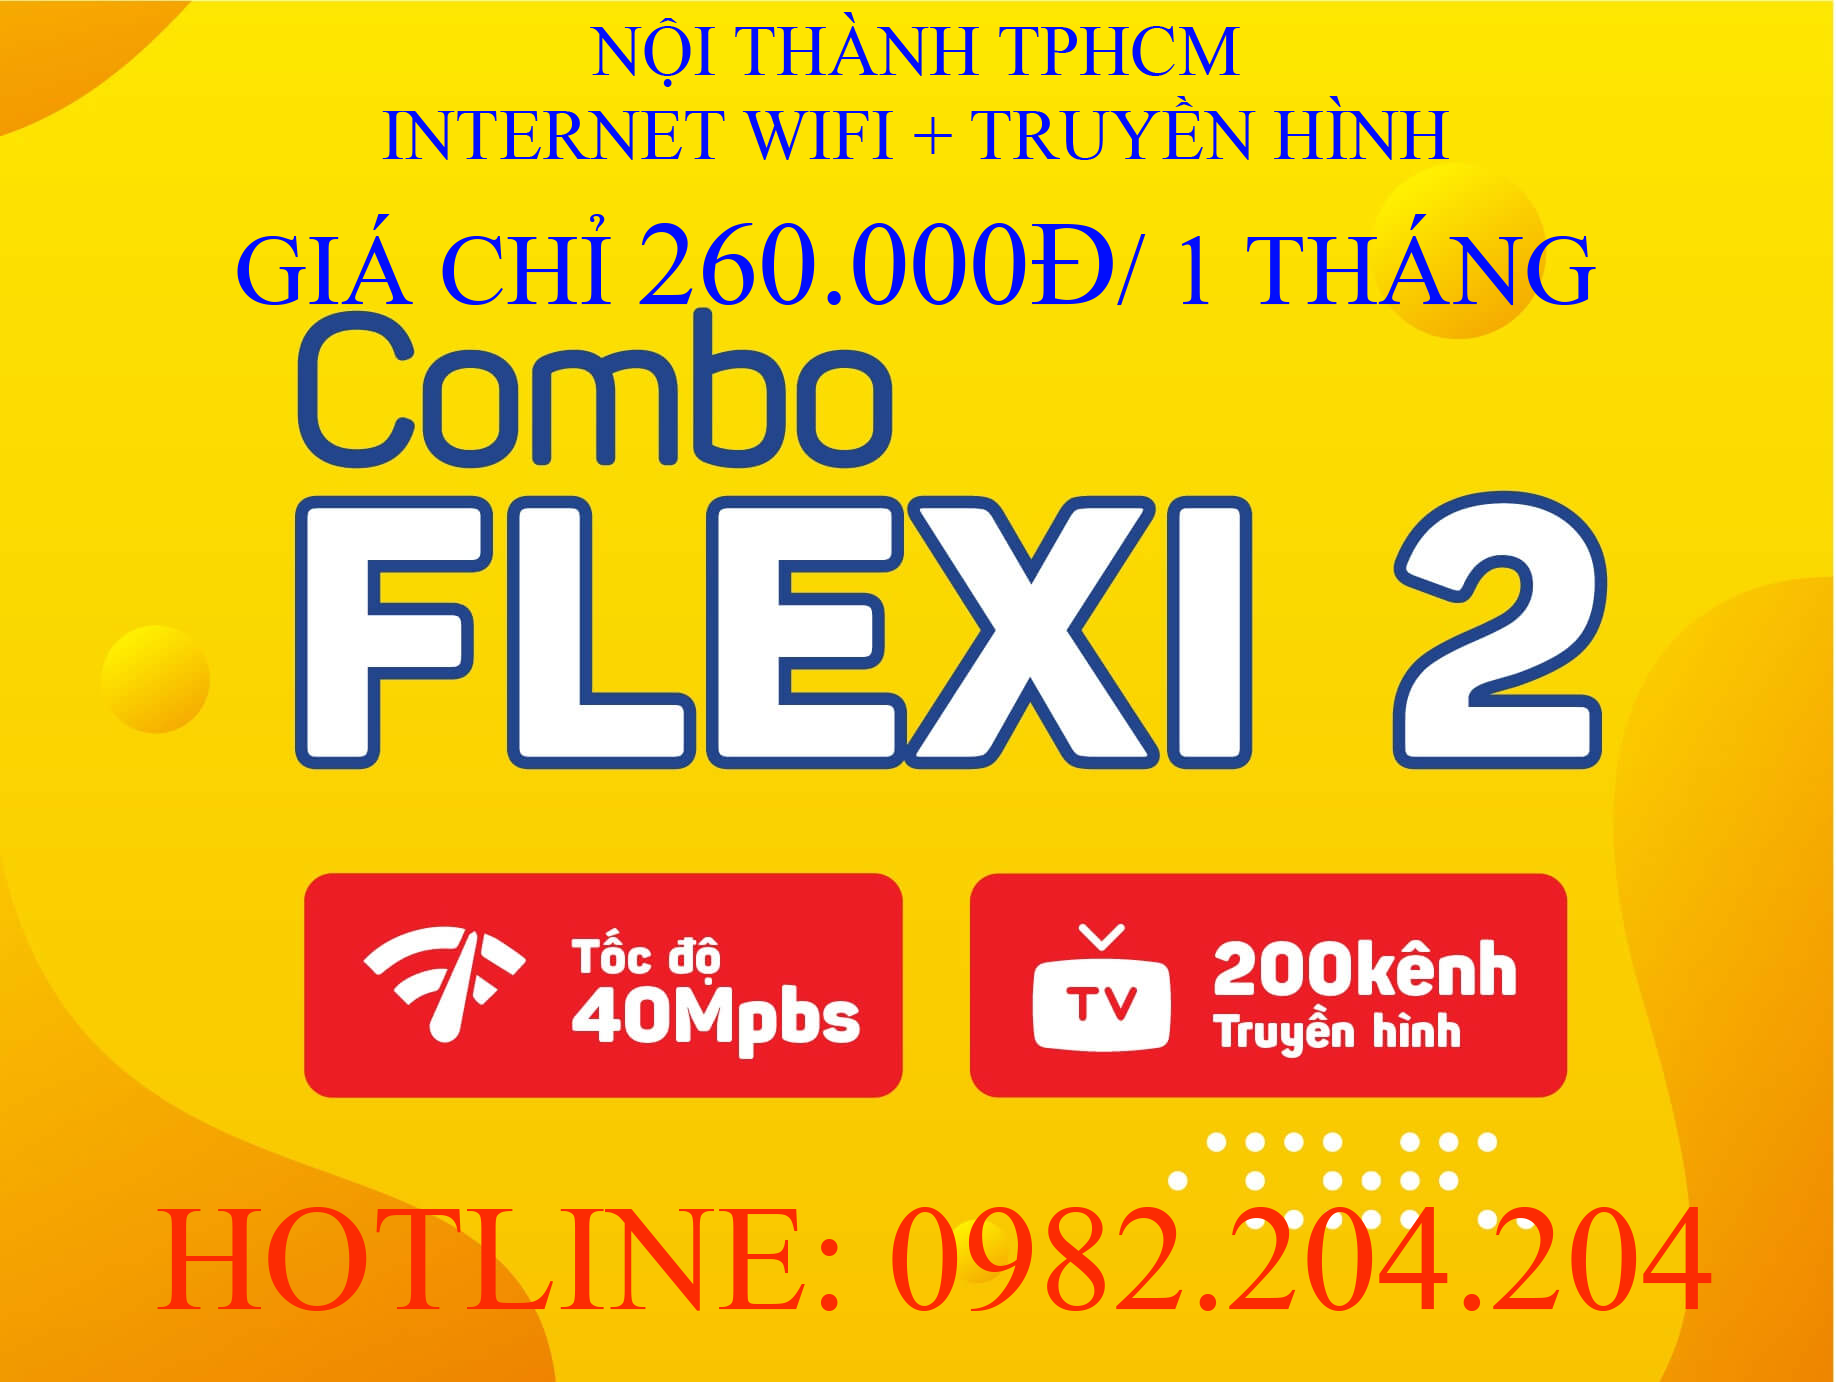 Lắp Mạng Cáp Quang Wifi Giá Rẻ HCM Nội Thành Gói Combo flexi 2 kèm truyền hình